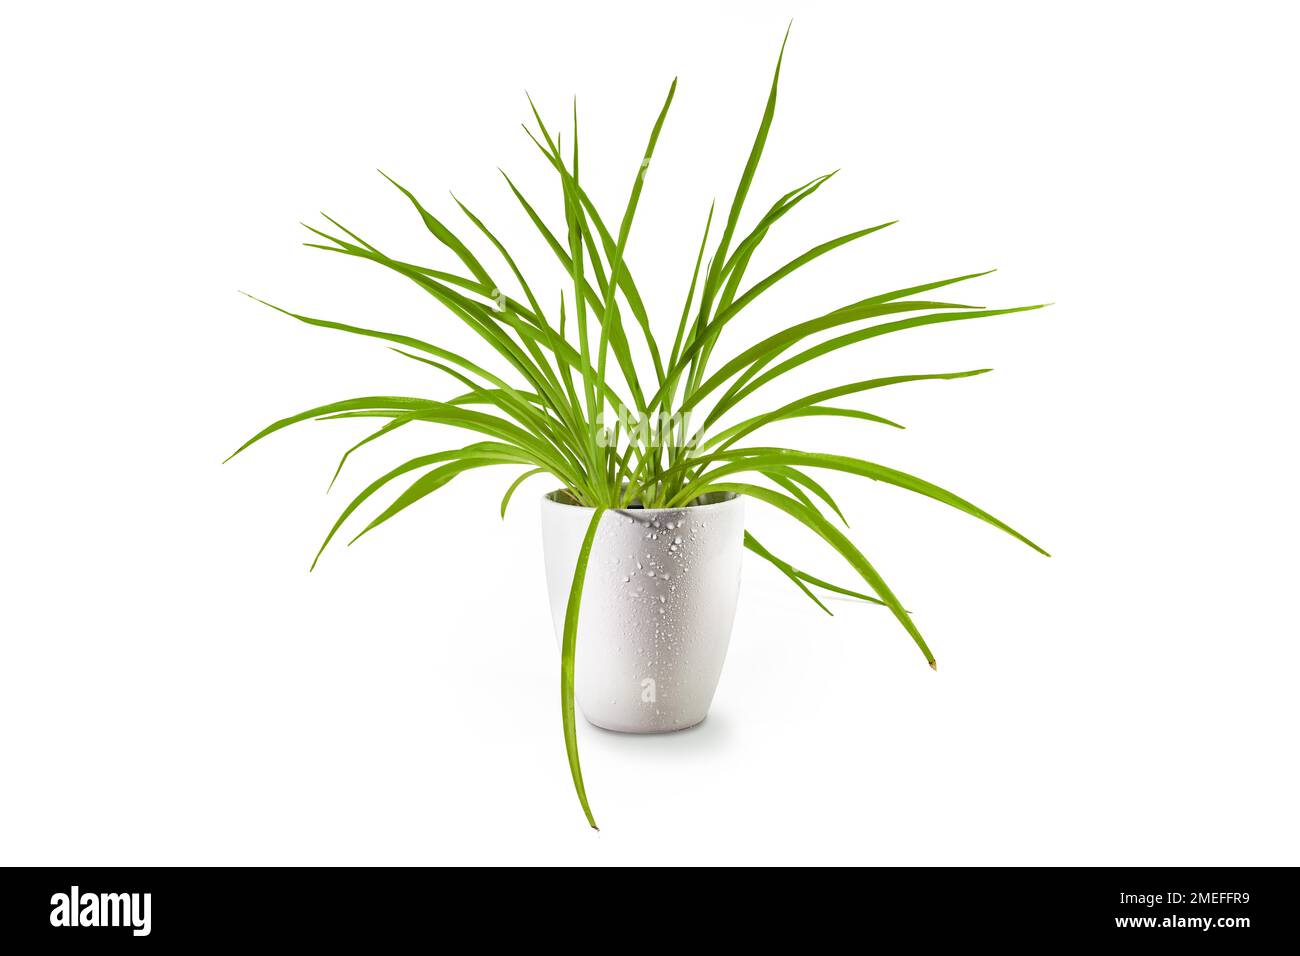 Pianta ragno (Chlorophytum comosum), perenne sempreverde con lunghe foglie verdi in vaso come pianta interna in una piantatrice di porcellana, isolata su un bianco Foto Stock